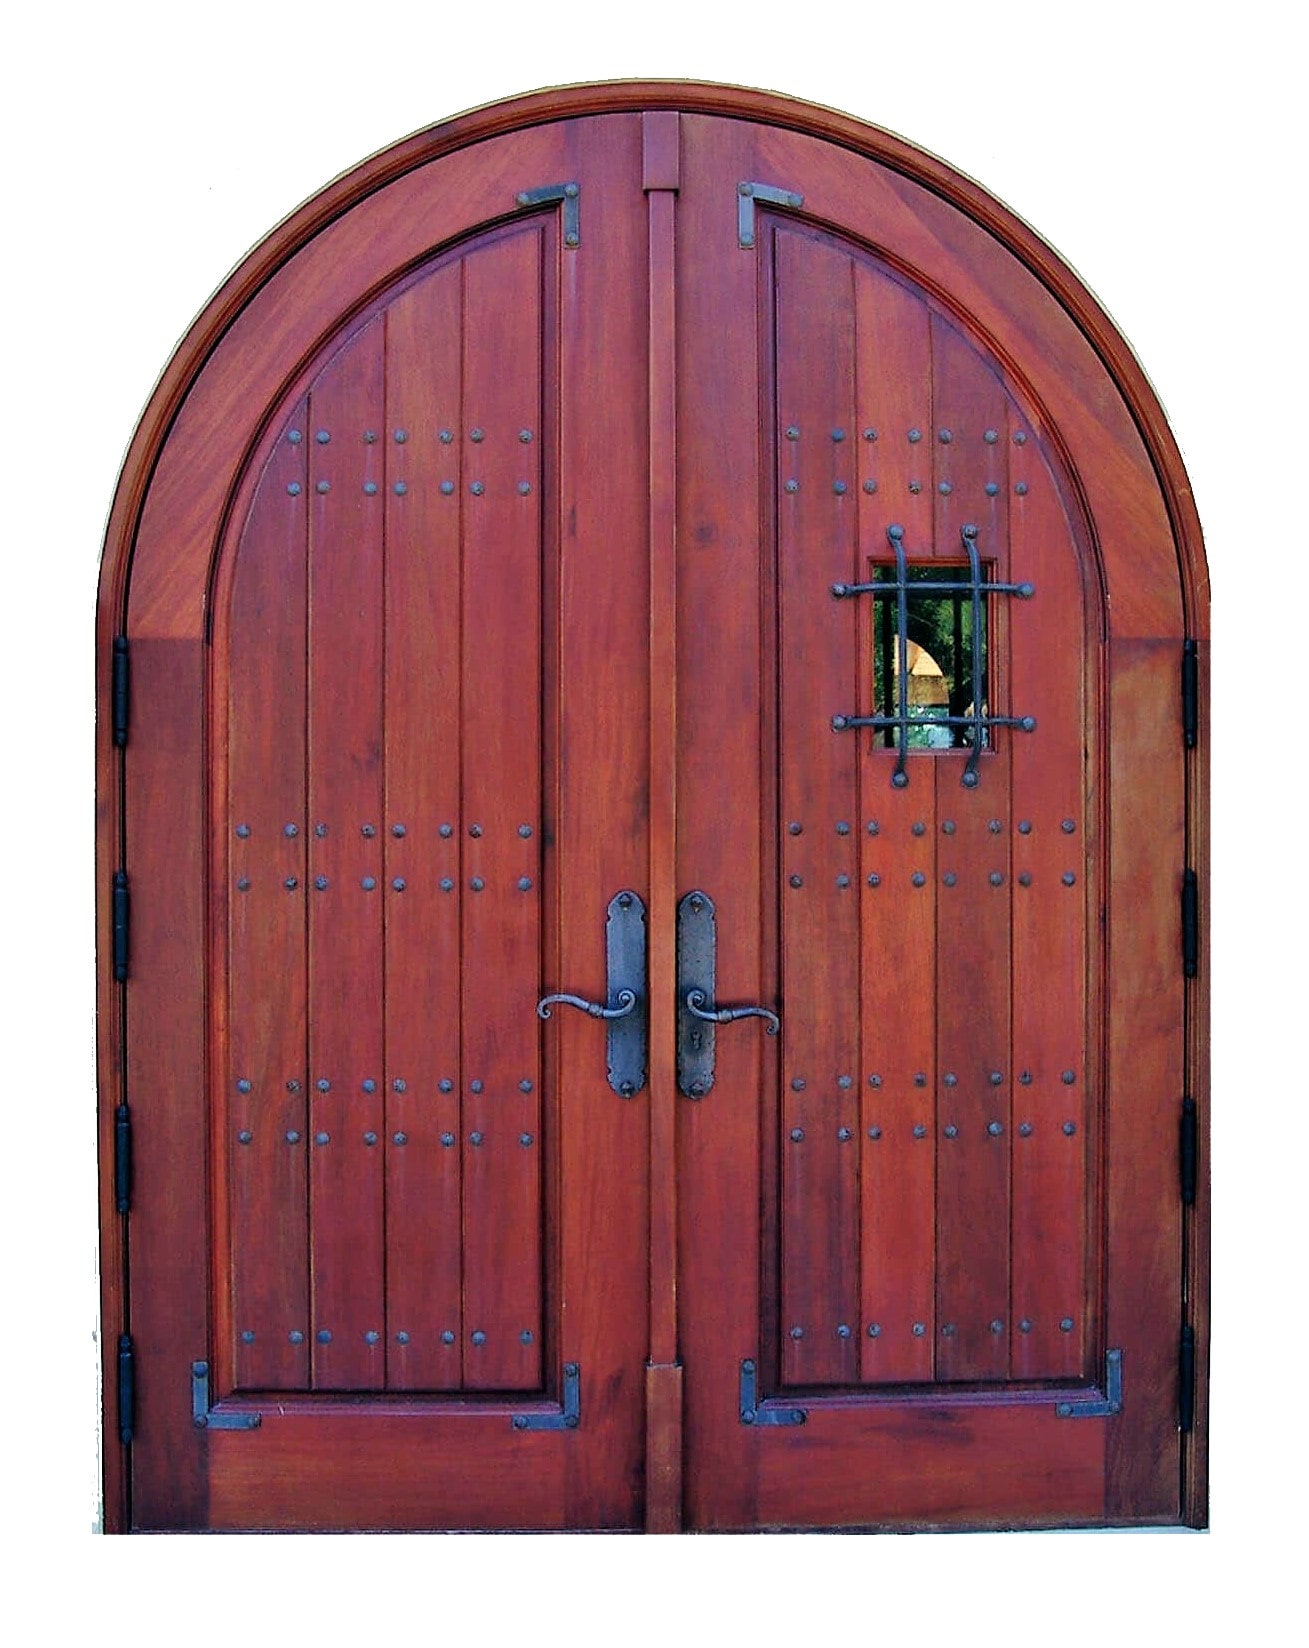 MERRIT ISLAND MAHOGANY ARCHED DOOR